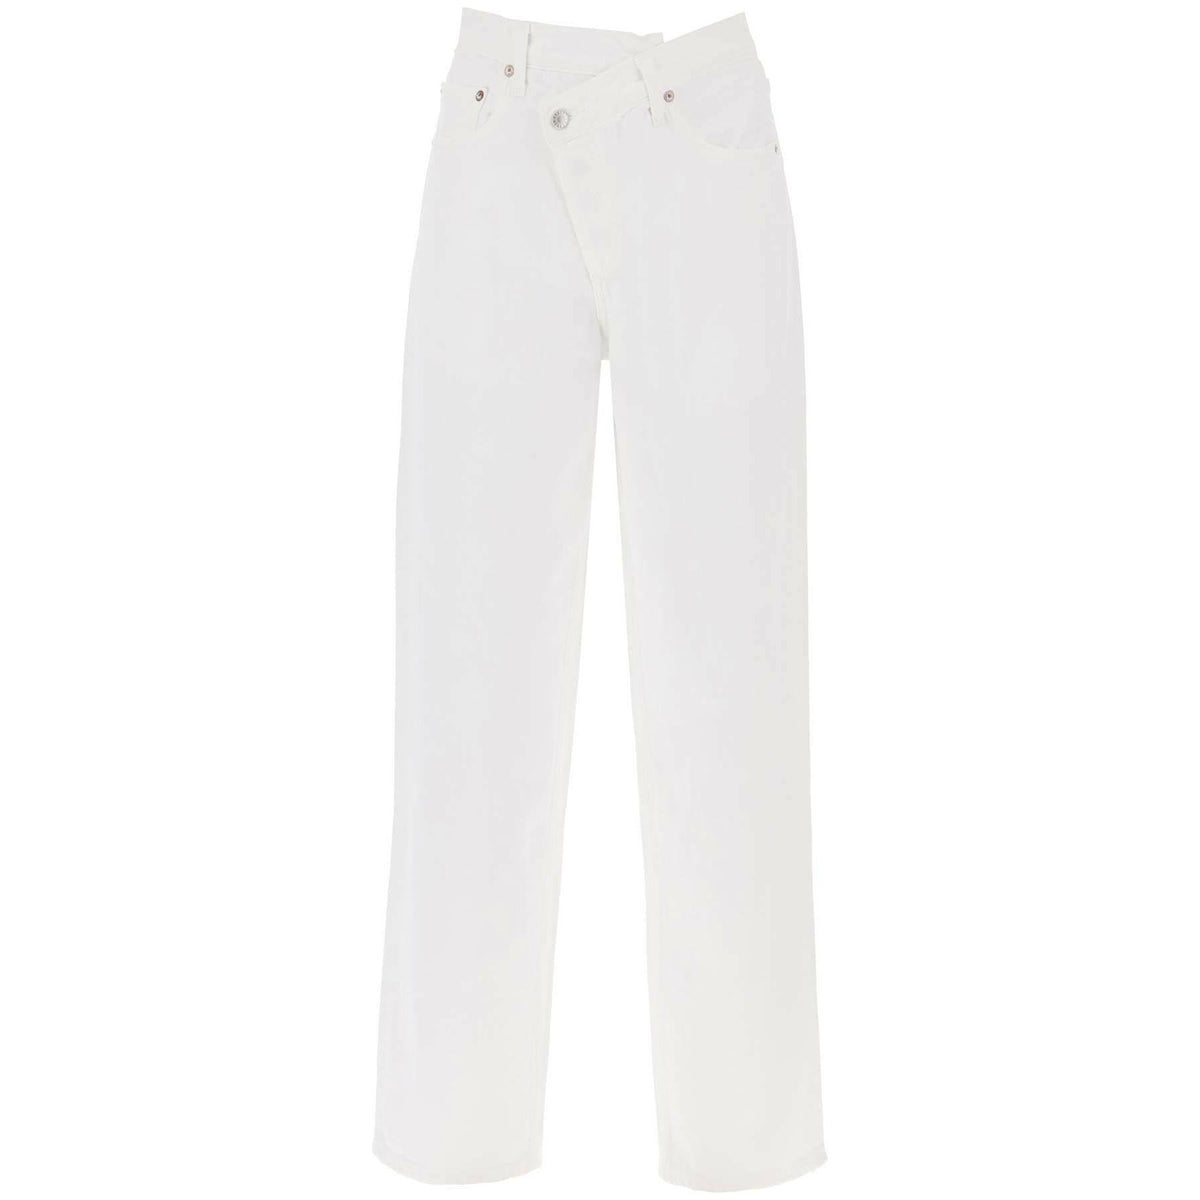 White Criss Cross Organic Cotton Jeans in Milkshake AGOLDE JOHN JULIA.